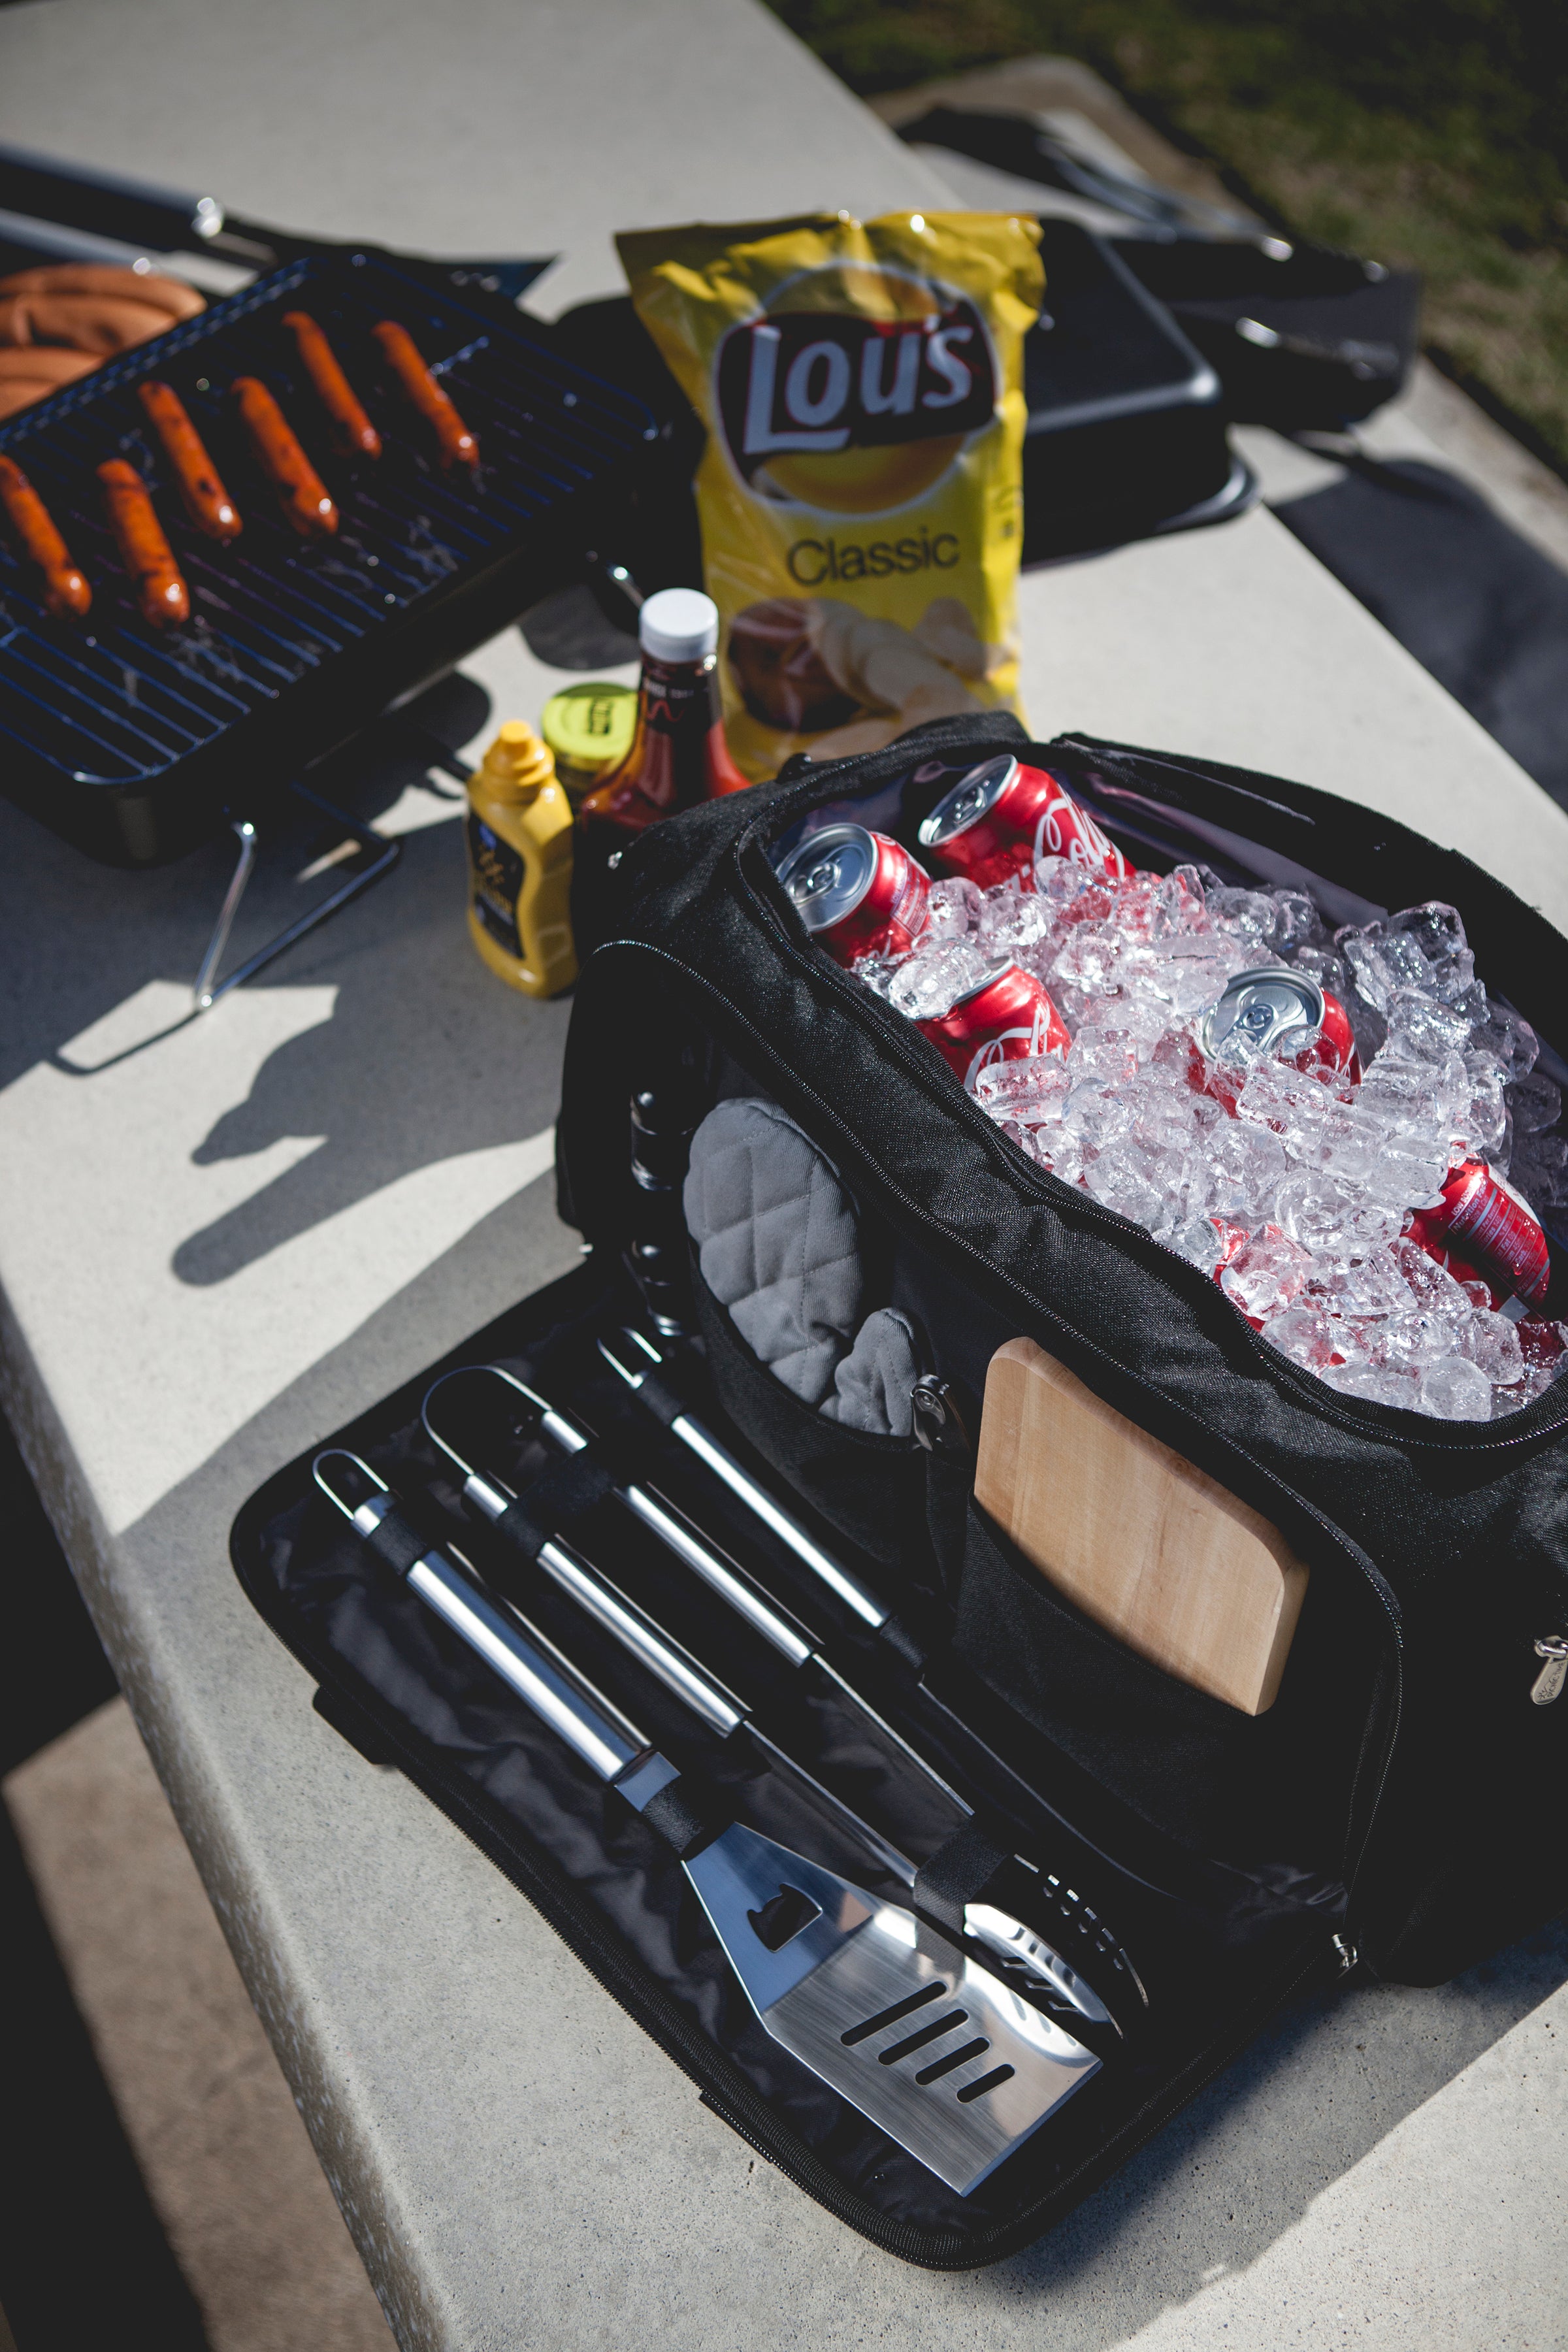 Washington Huskies - BBQ Kit Grill Set & Cooler